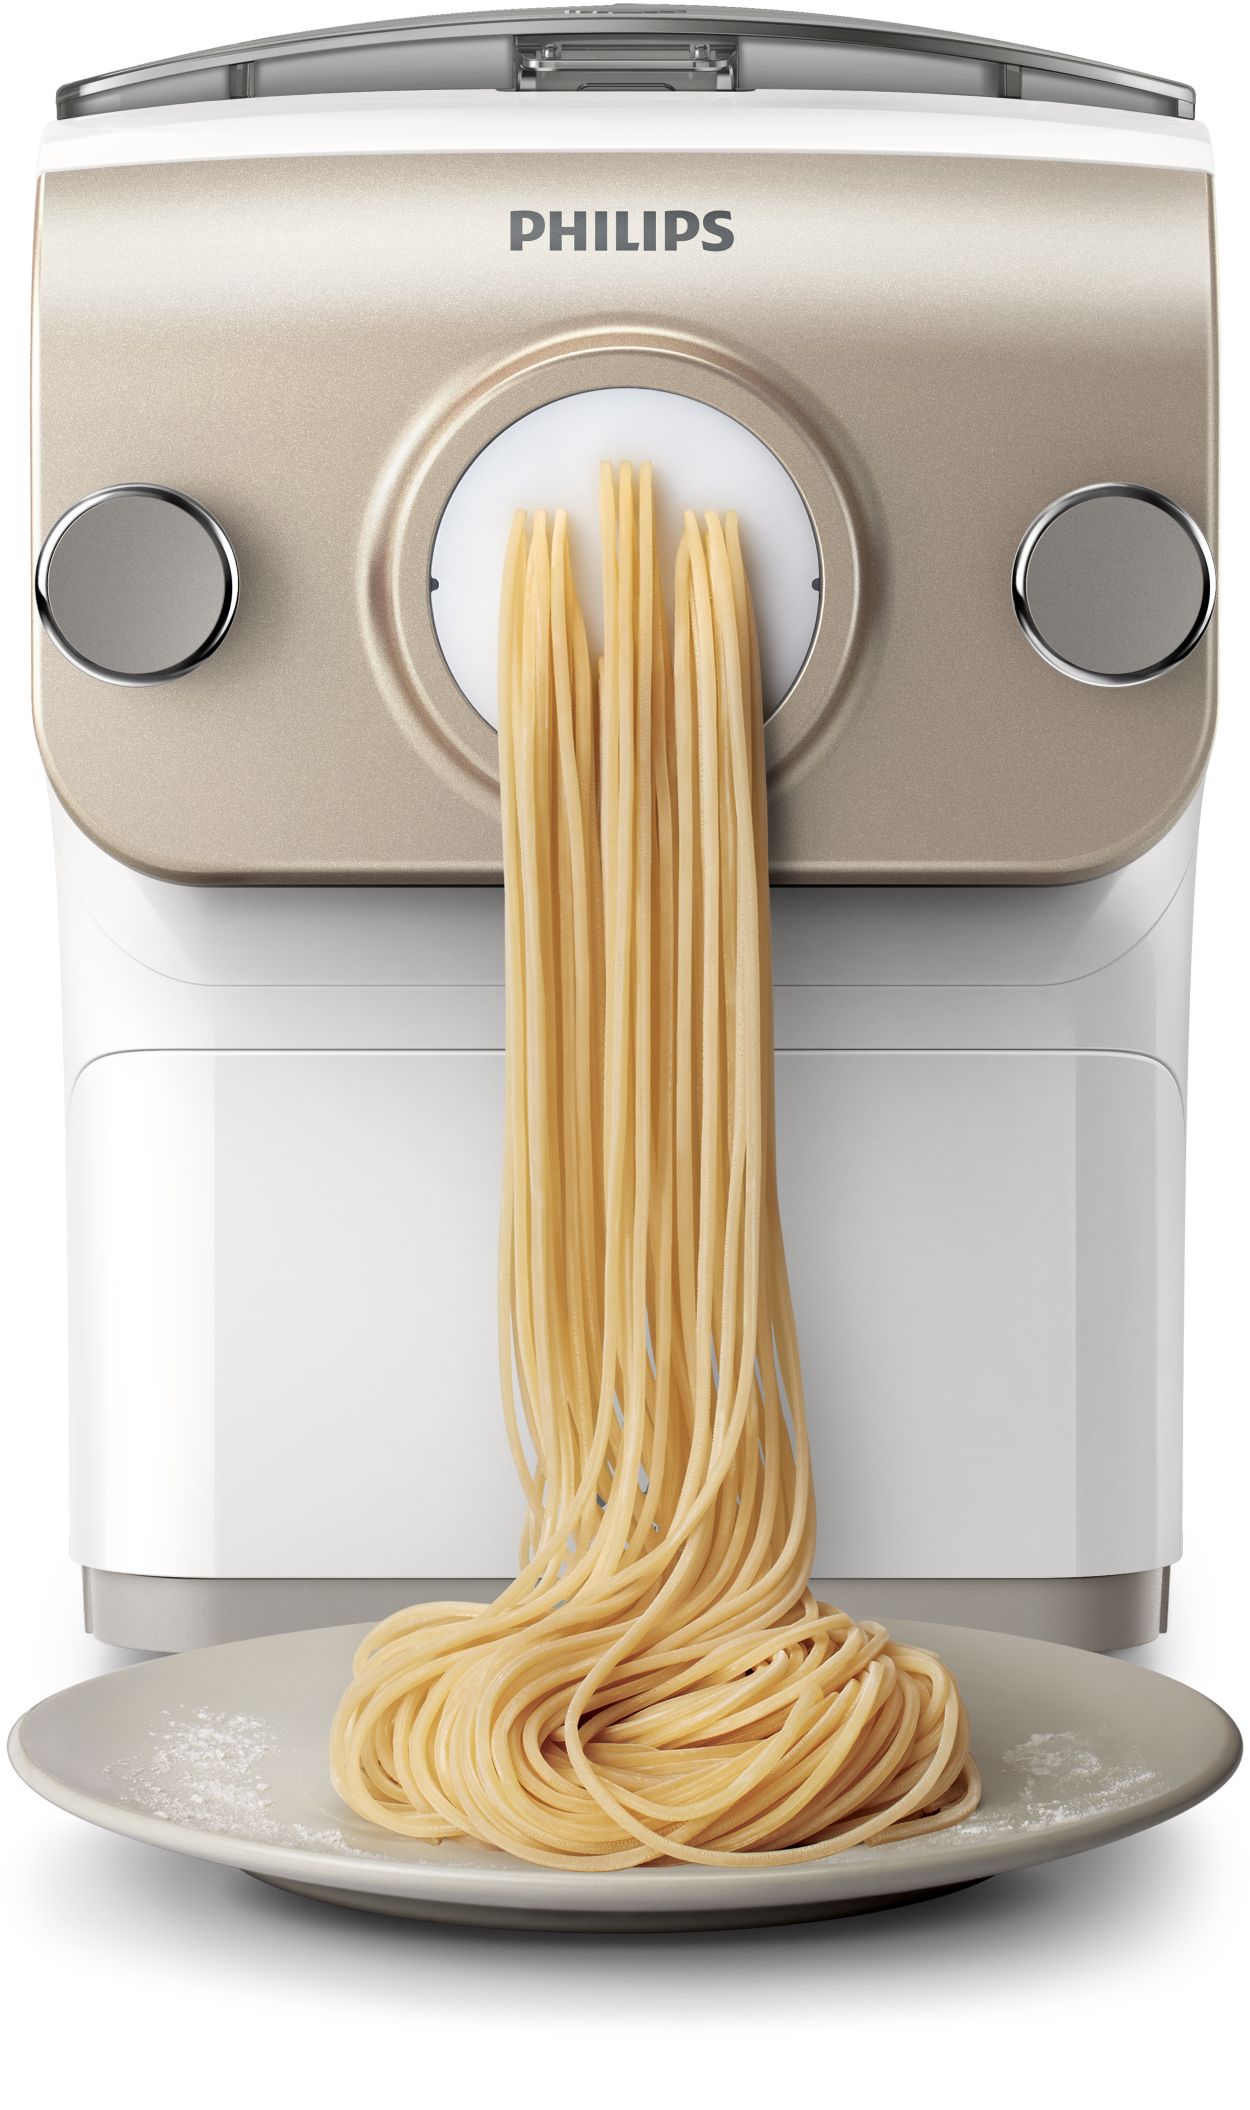 Avance Collection Pasta maker - Ricondizionati HR2380/05R1